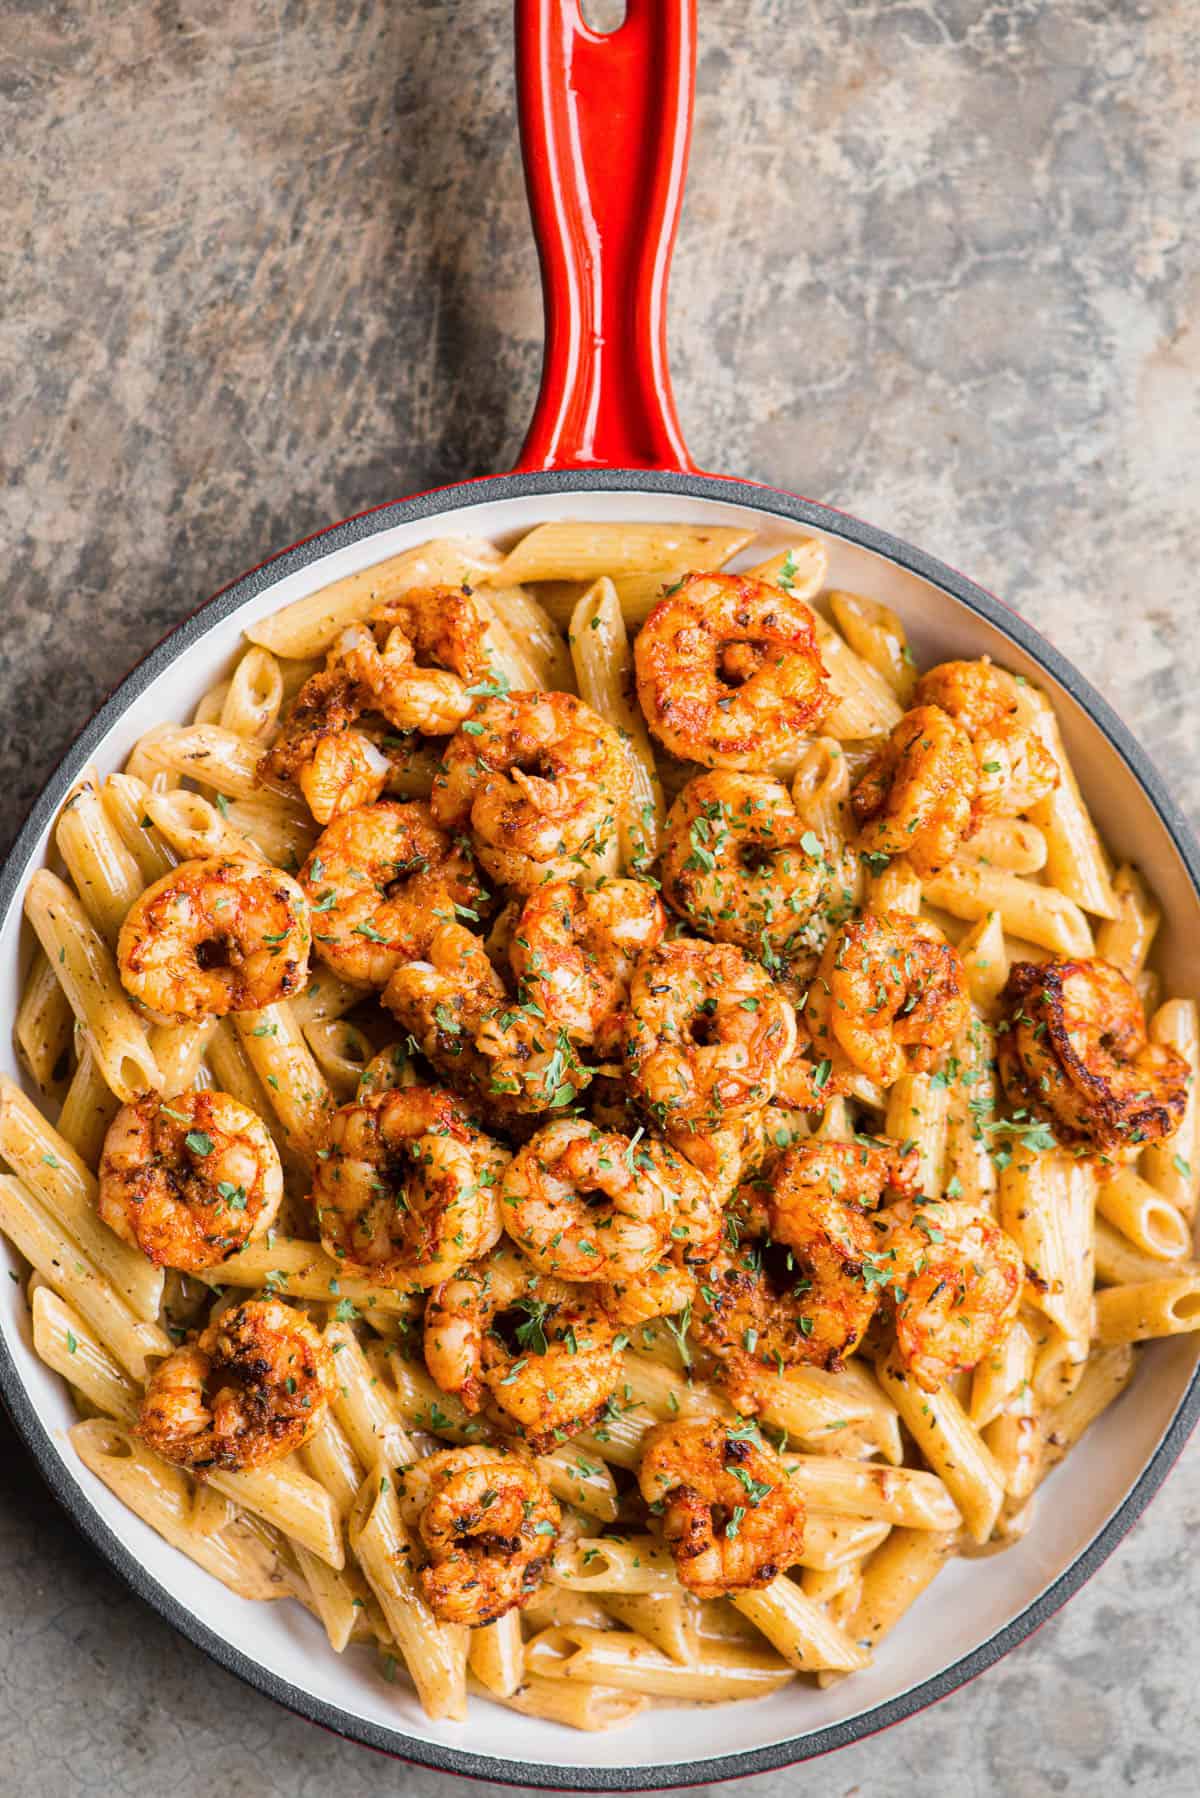 cajun pasta in cream sauce with shrimp